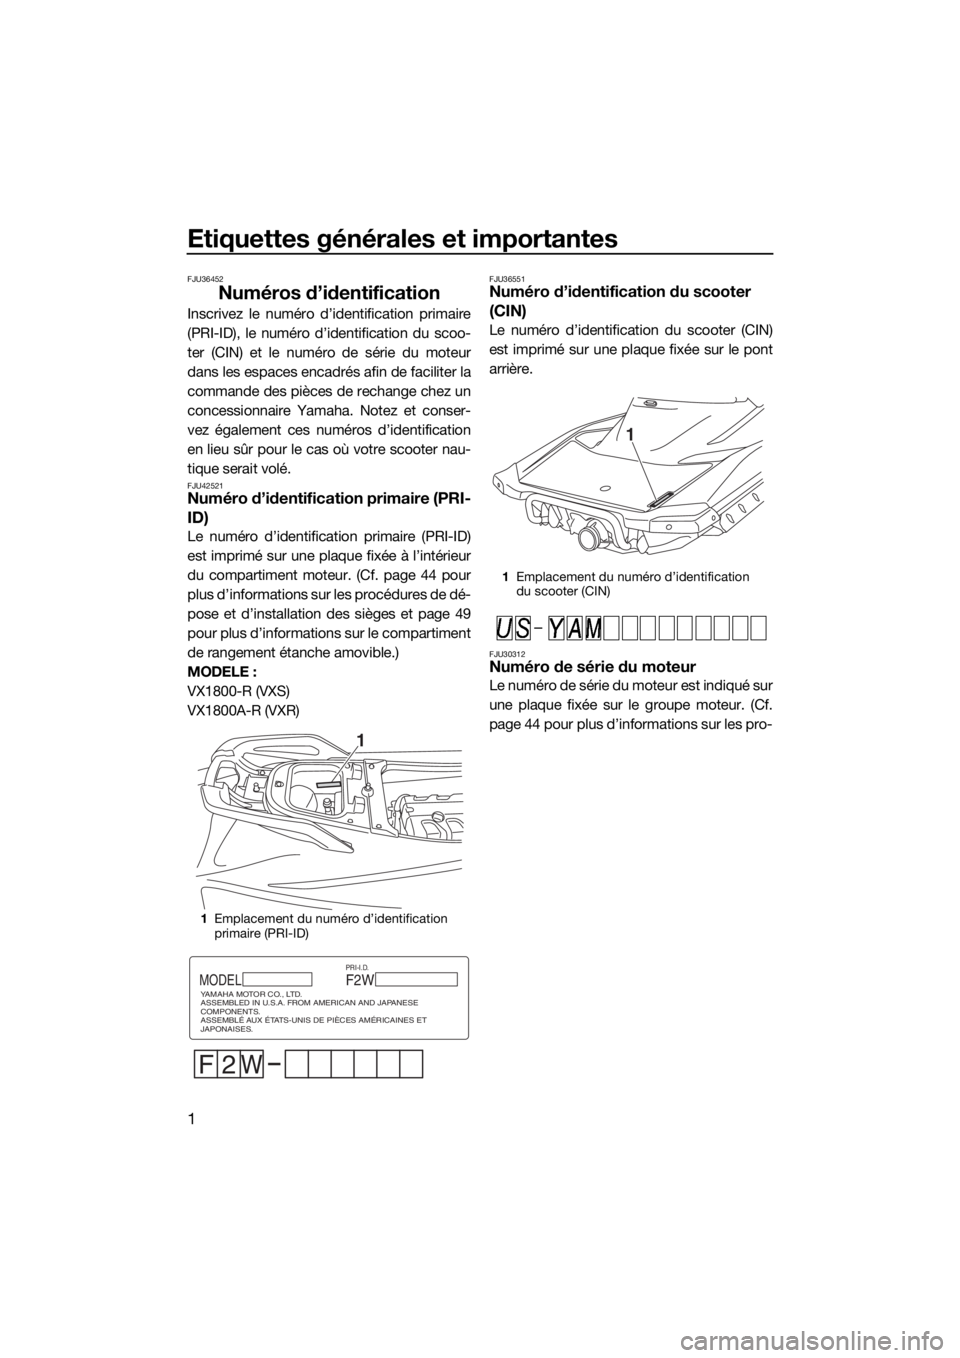 YAMAHA VXR 2016  Notices Demploi (in French) Etiquettes générales et importantes
1
FJU36452
Numéros d’identification
Inscrivez le numéro d’identification primaire
(PRI-ID), le numéro d’identification du scoo-
ter (CIN) et le numéro d